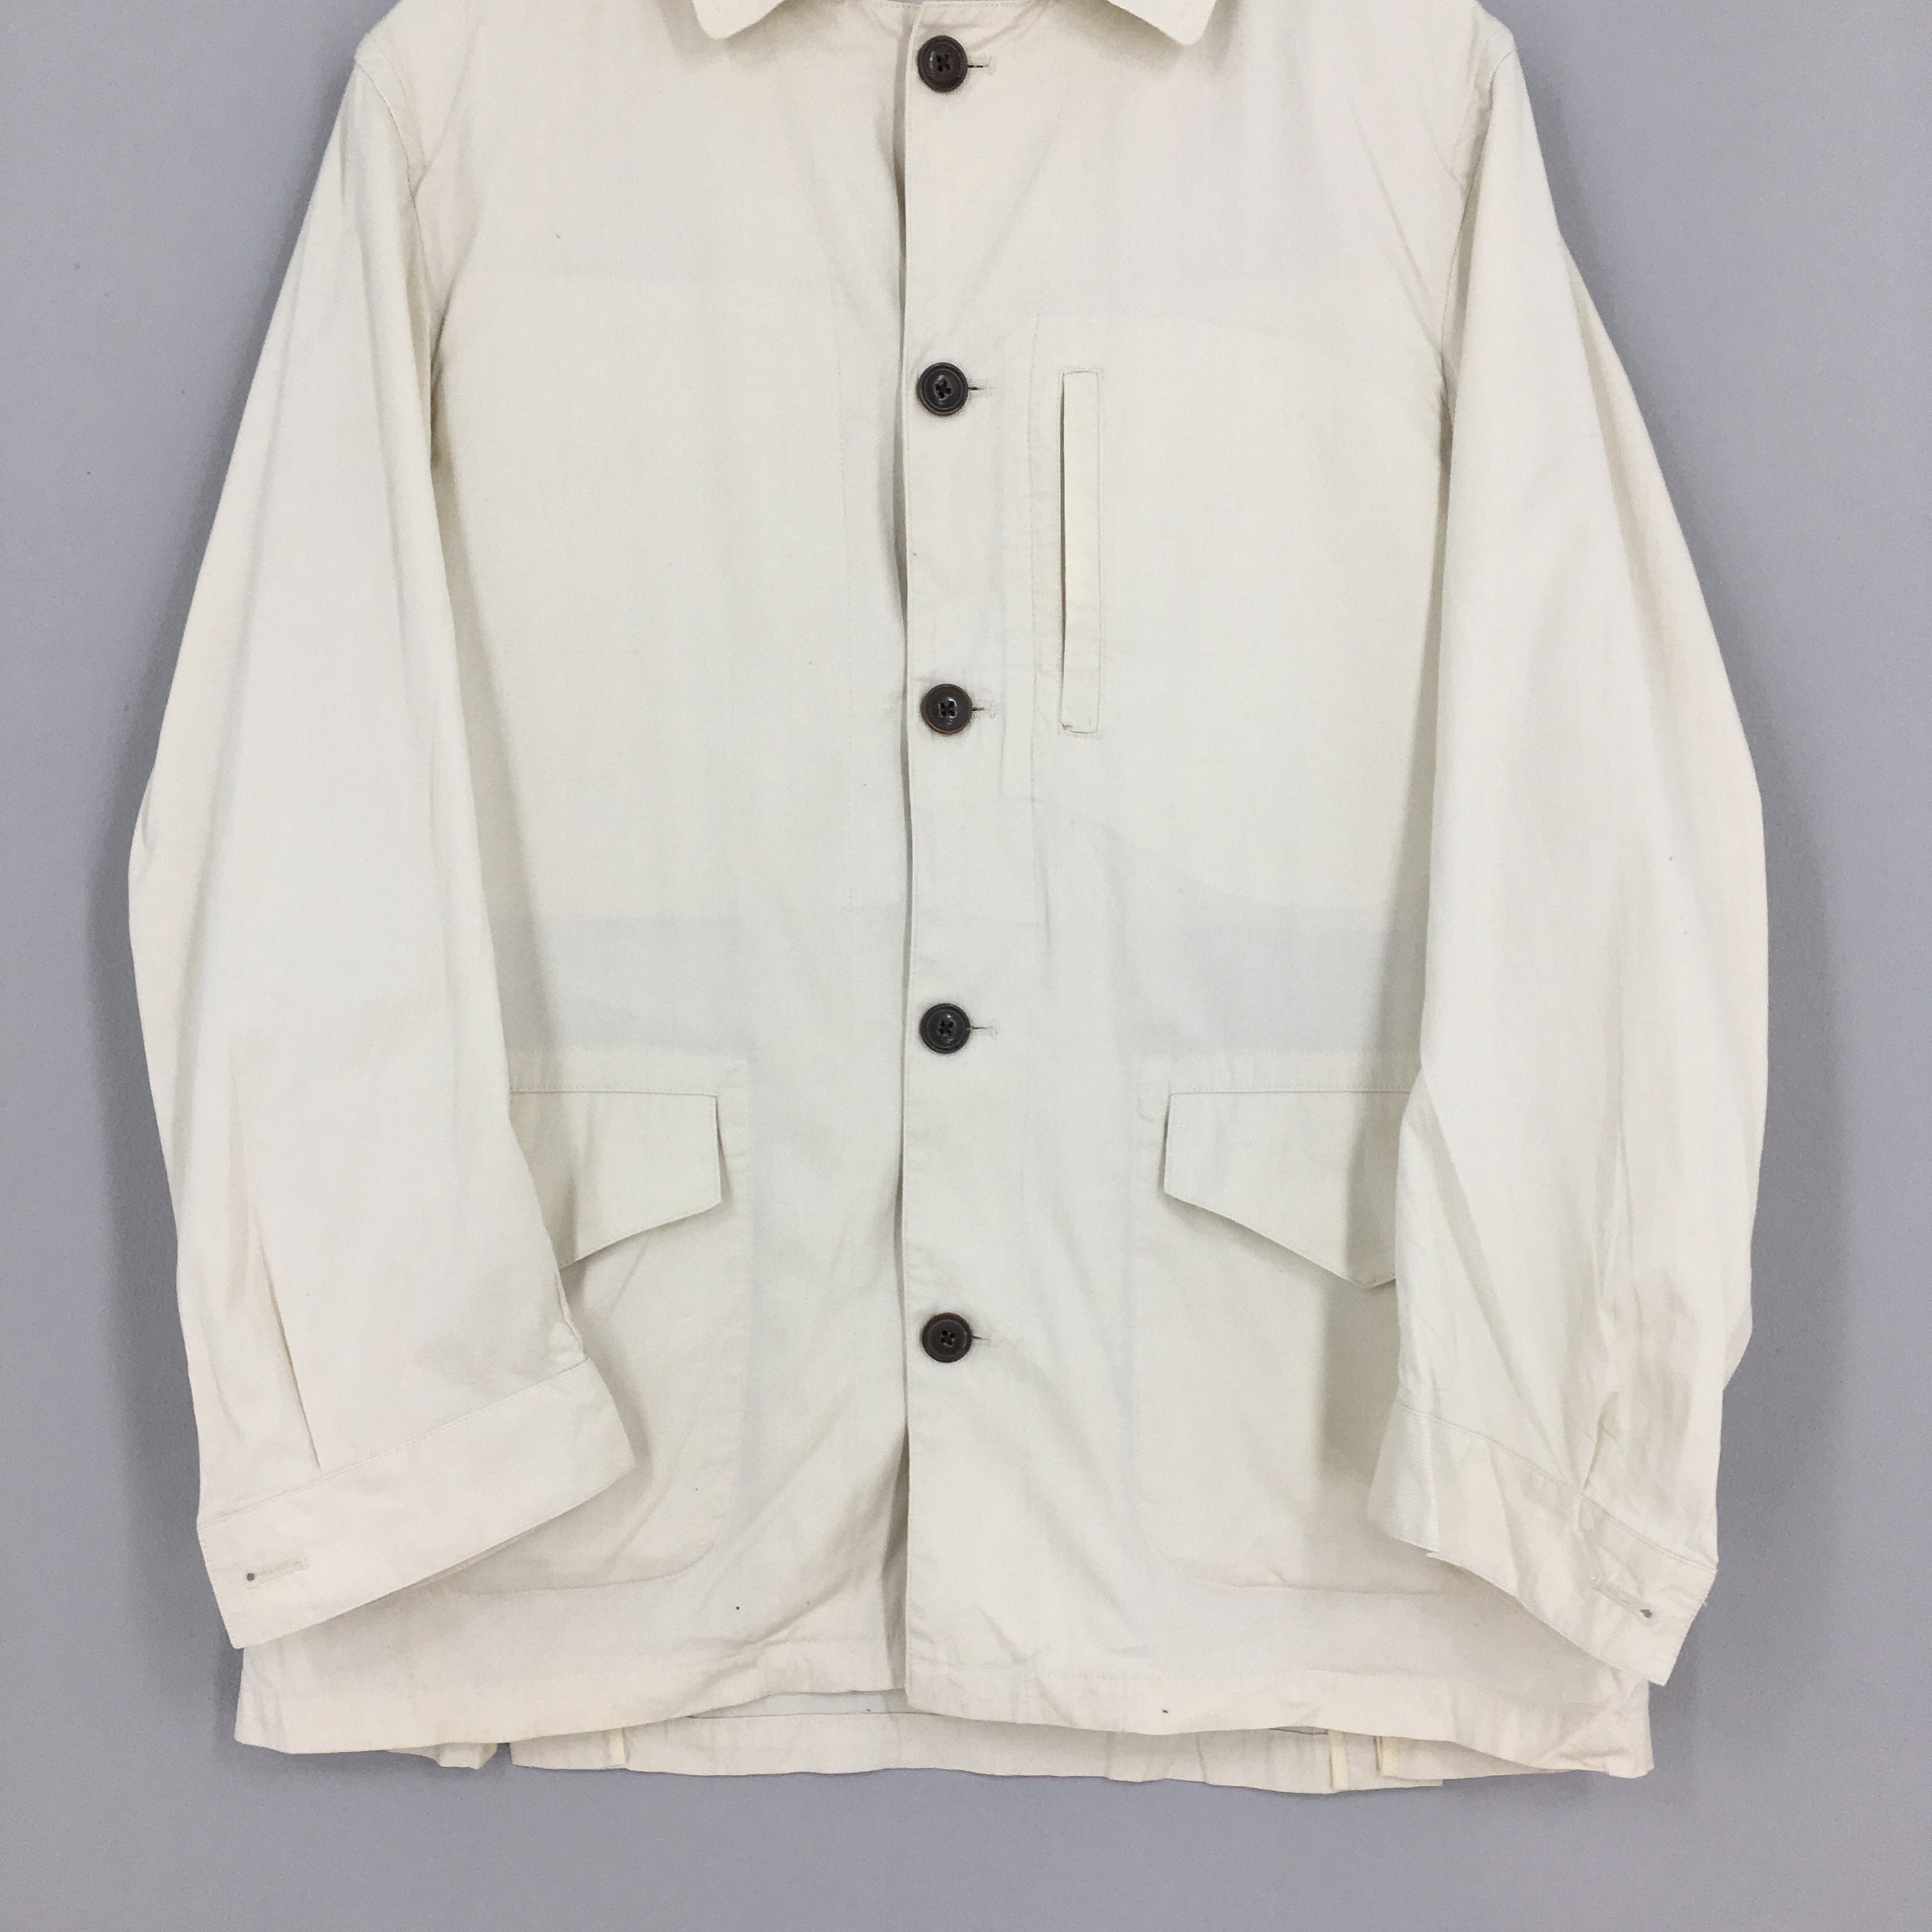 Vintage Casual Workers Jacket Medium 1990's Workwear | Etsy